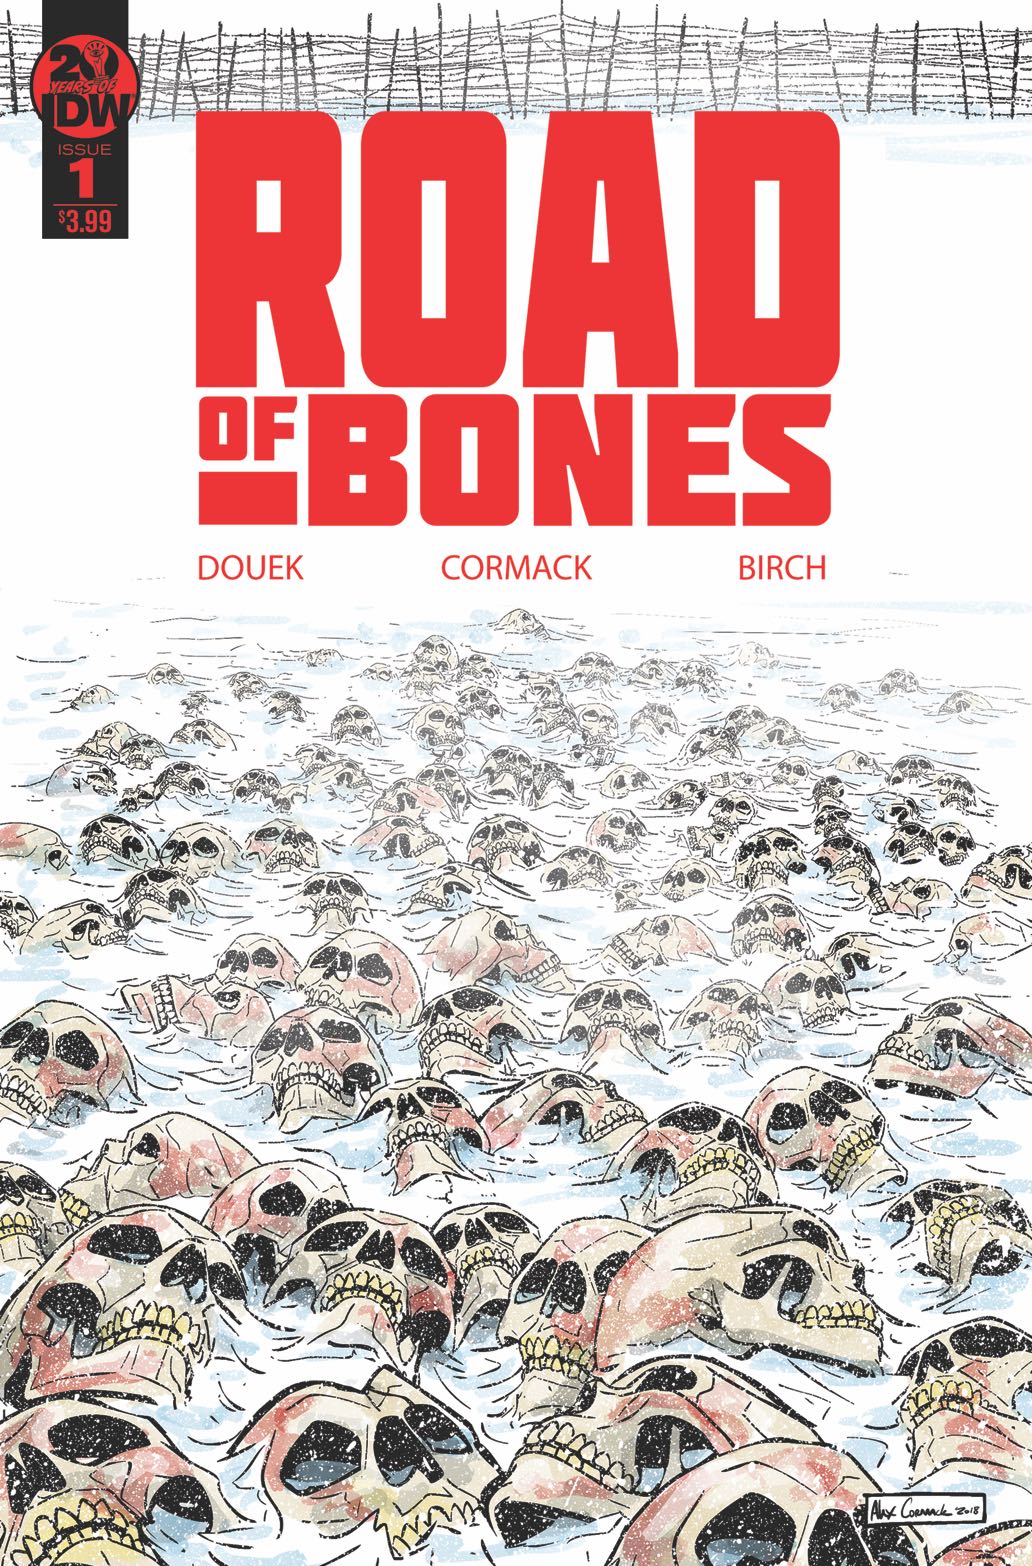 Road of Bones by Christopher Golden